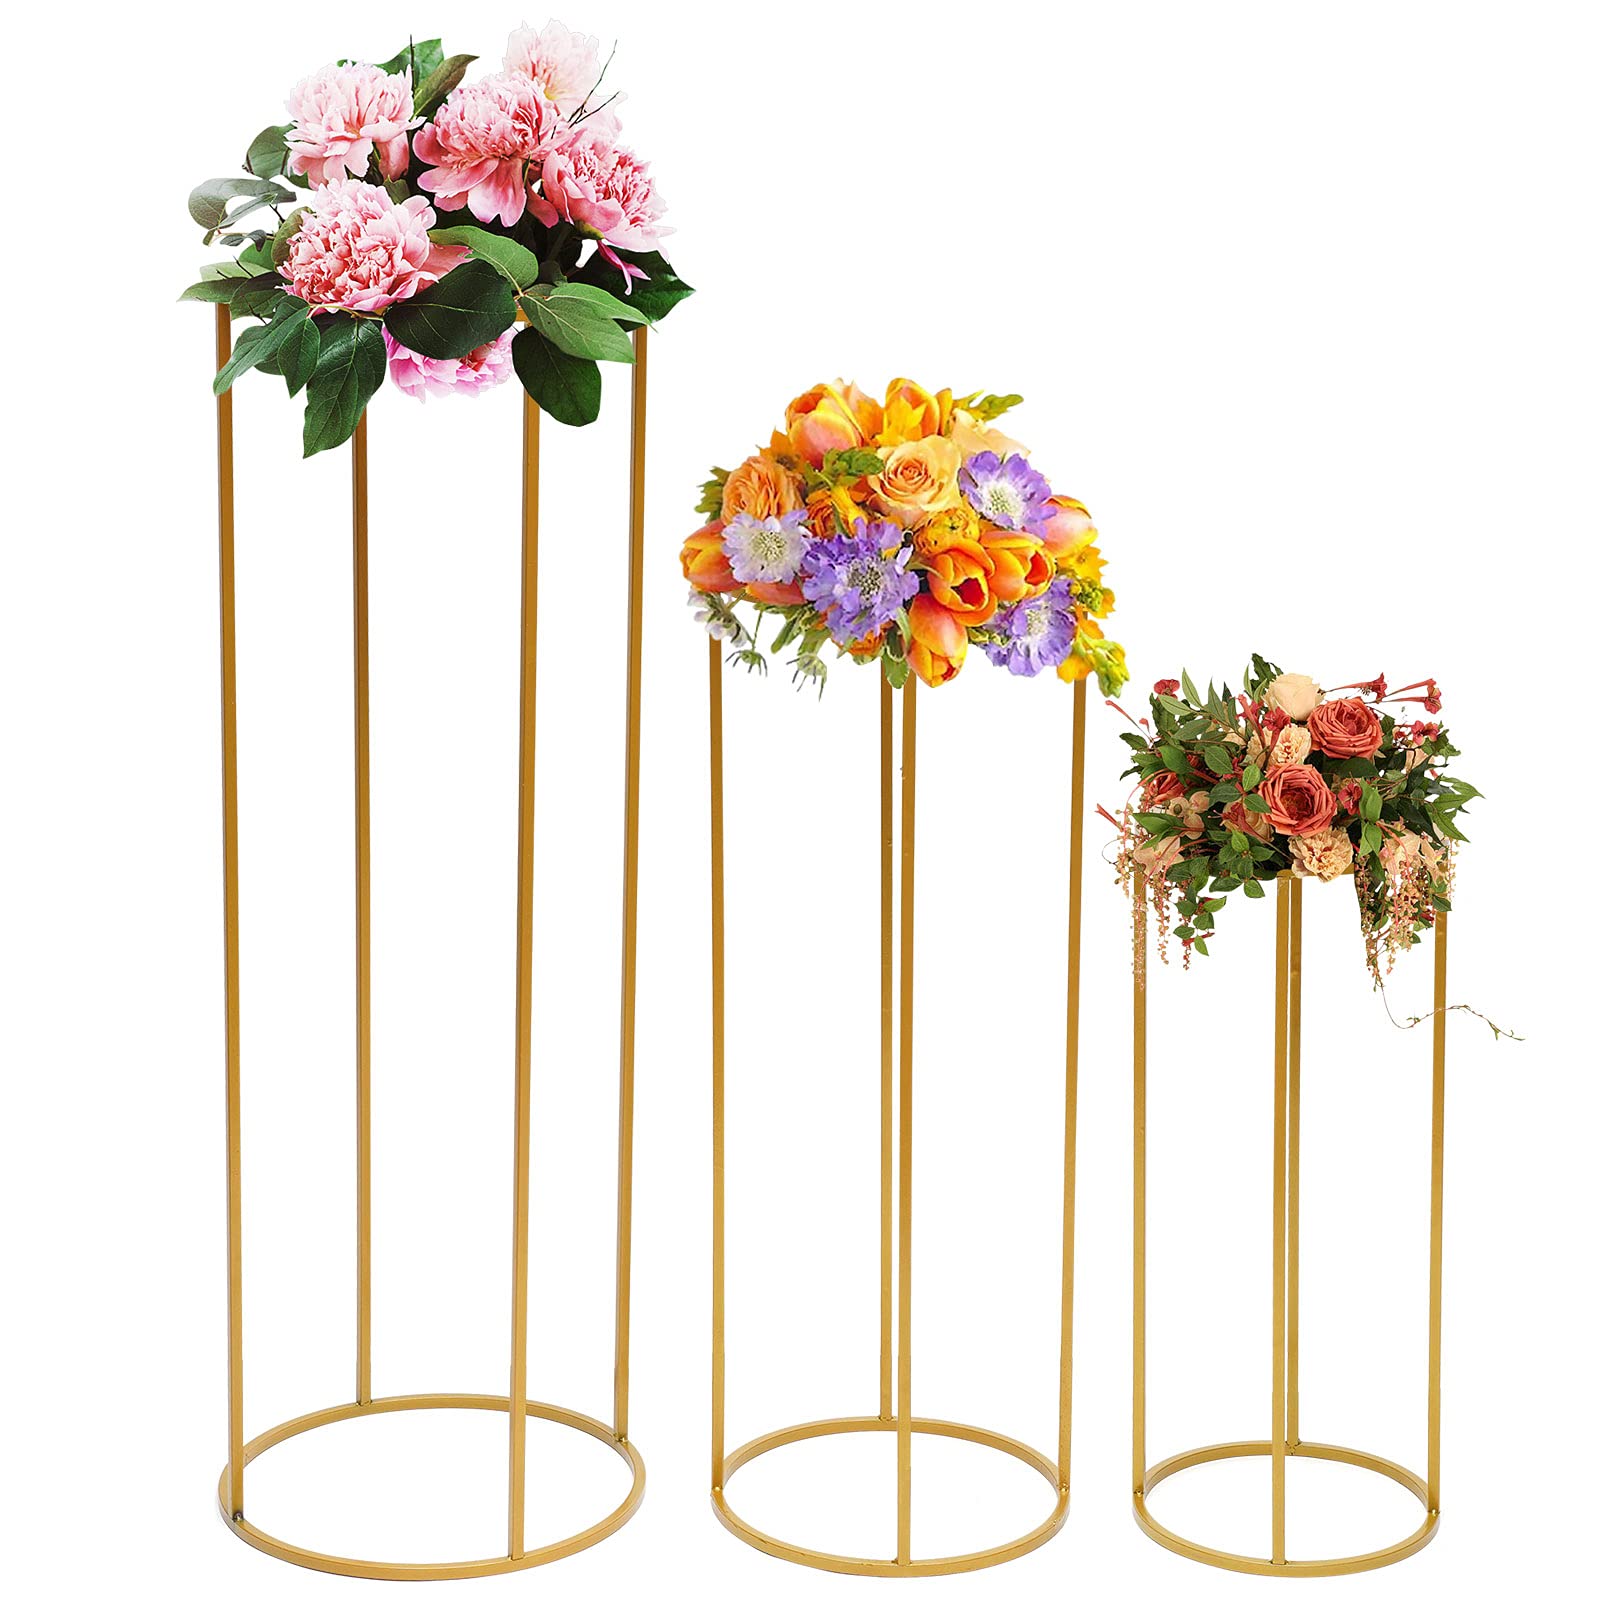 Lot de 3 supports de fleurs géométriques en métal doré pour mariage